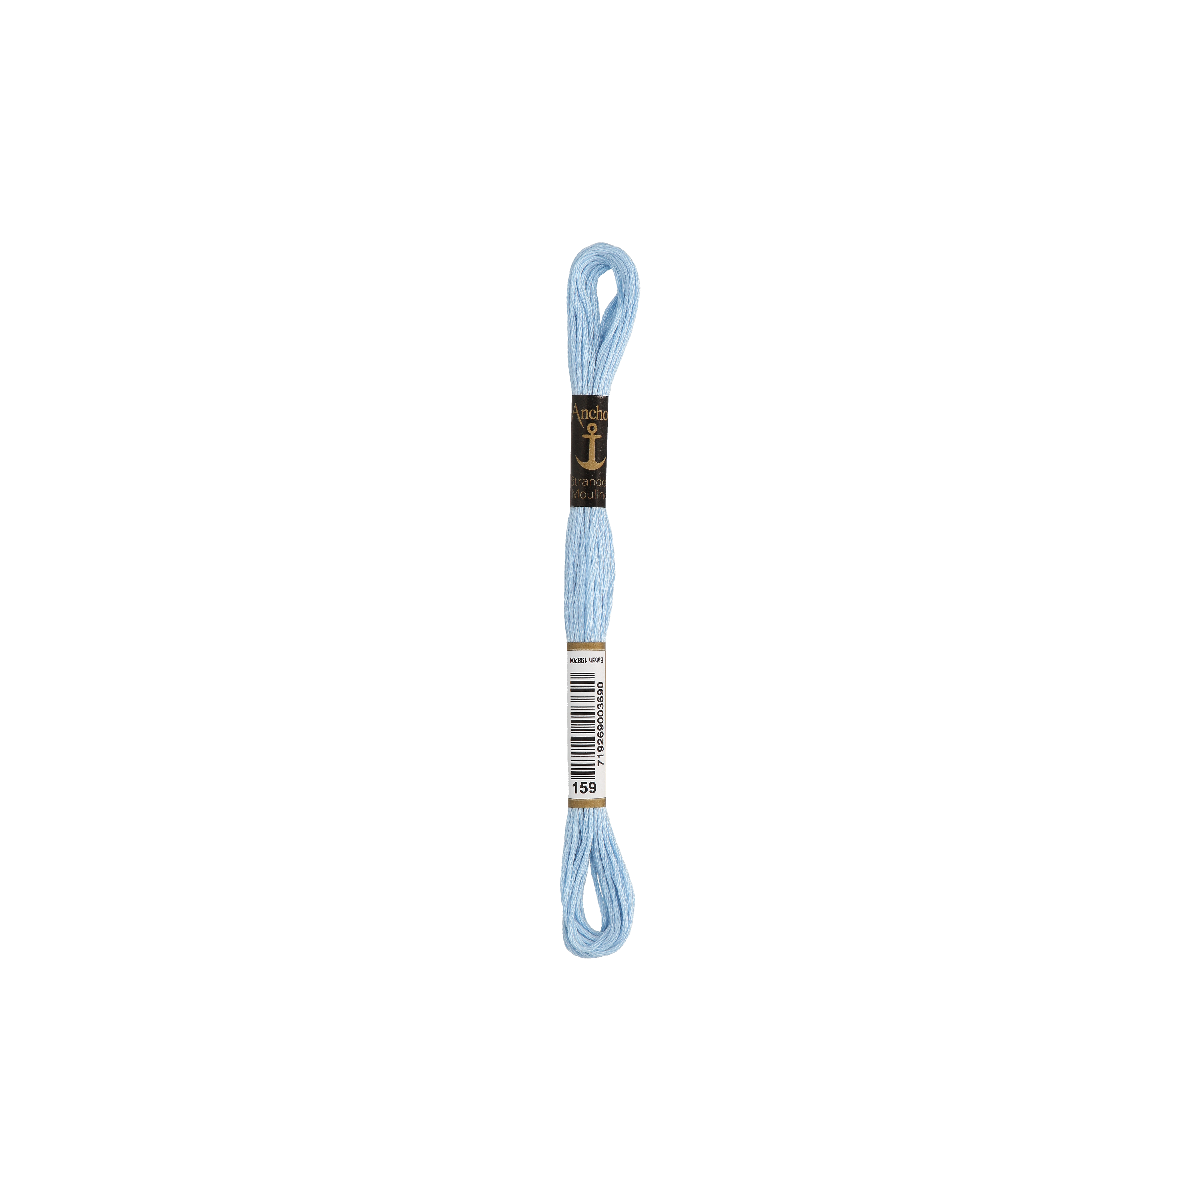 Anchor Sticktwist 8m, zartblau, Baumwolle, Farbe 159,...